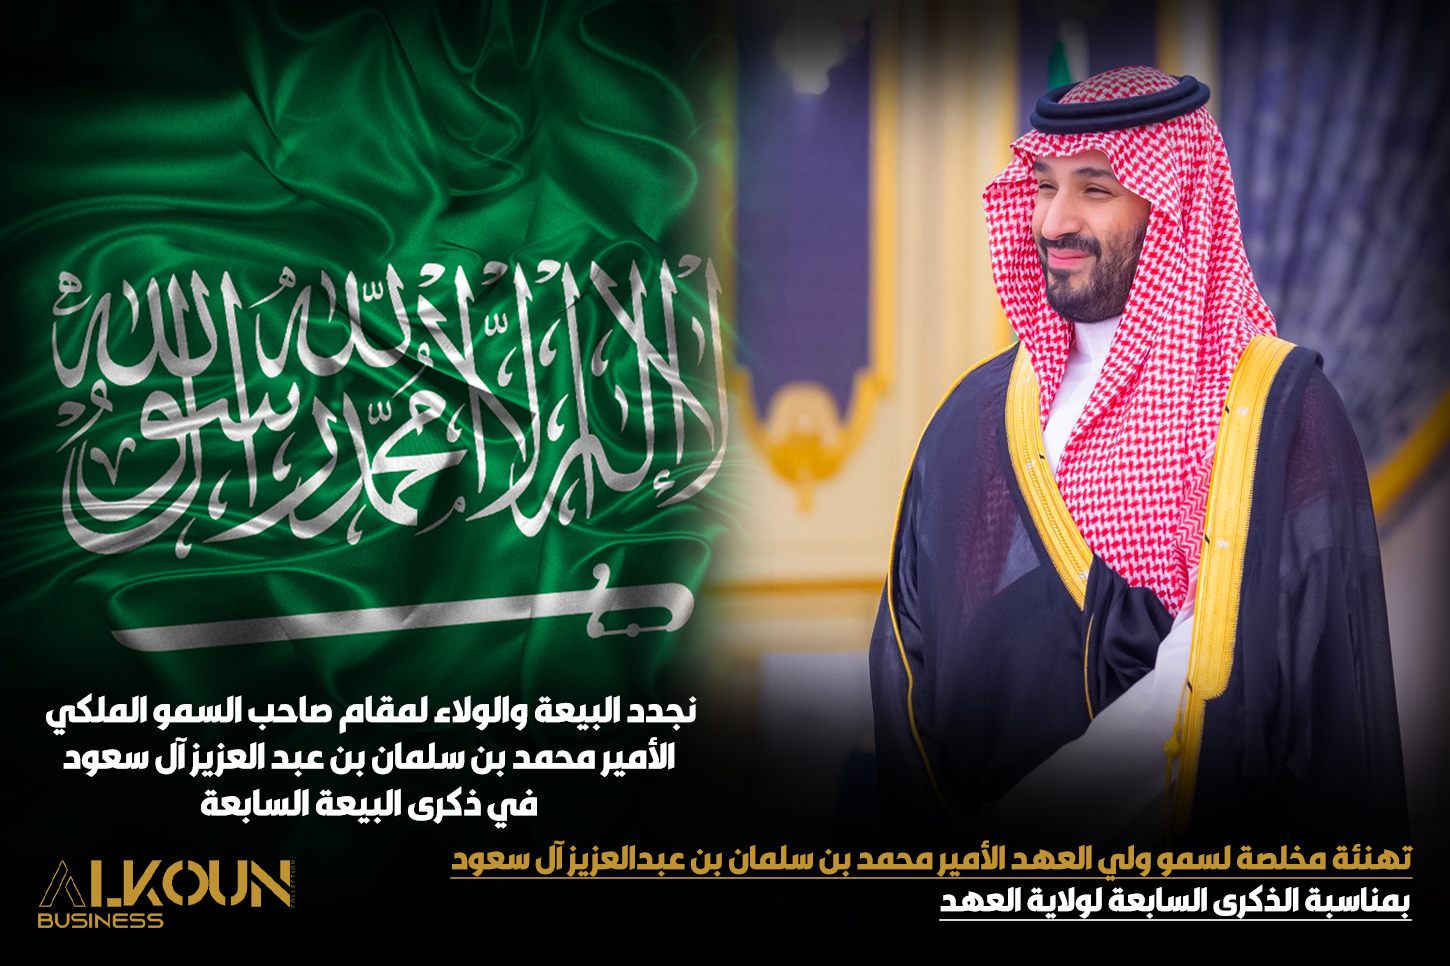 تهنئة مخلصة لسمو ولي العهد الأمير محمد بن سلمان بن عبدالعزيز آل سعود بمناسبة الذكرى السابعة لولاية العهد